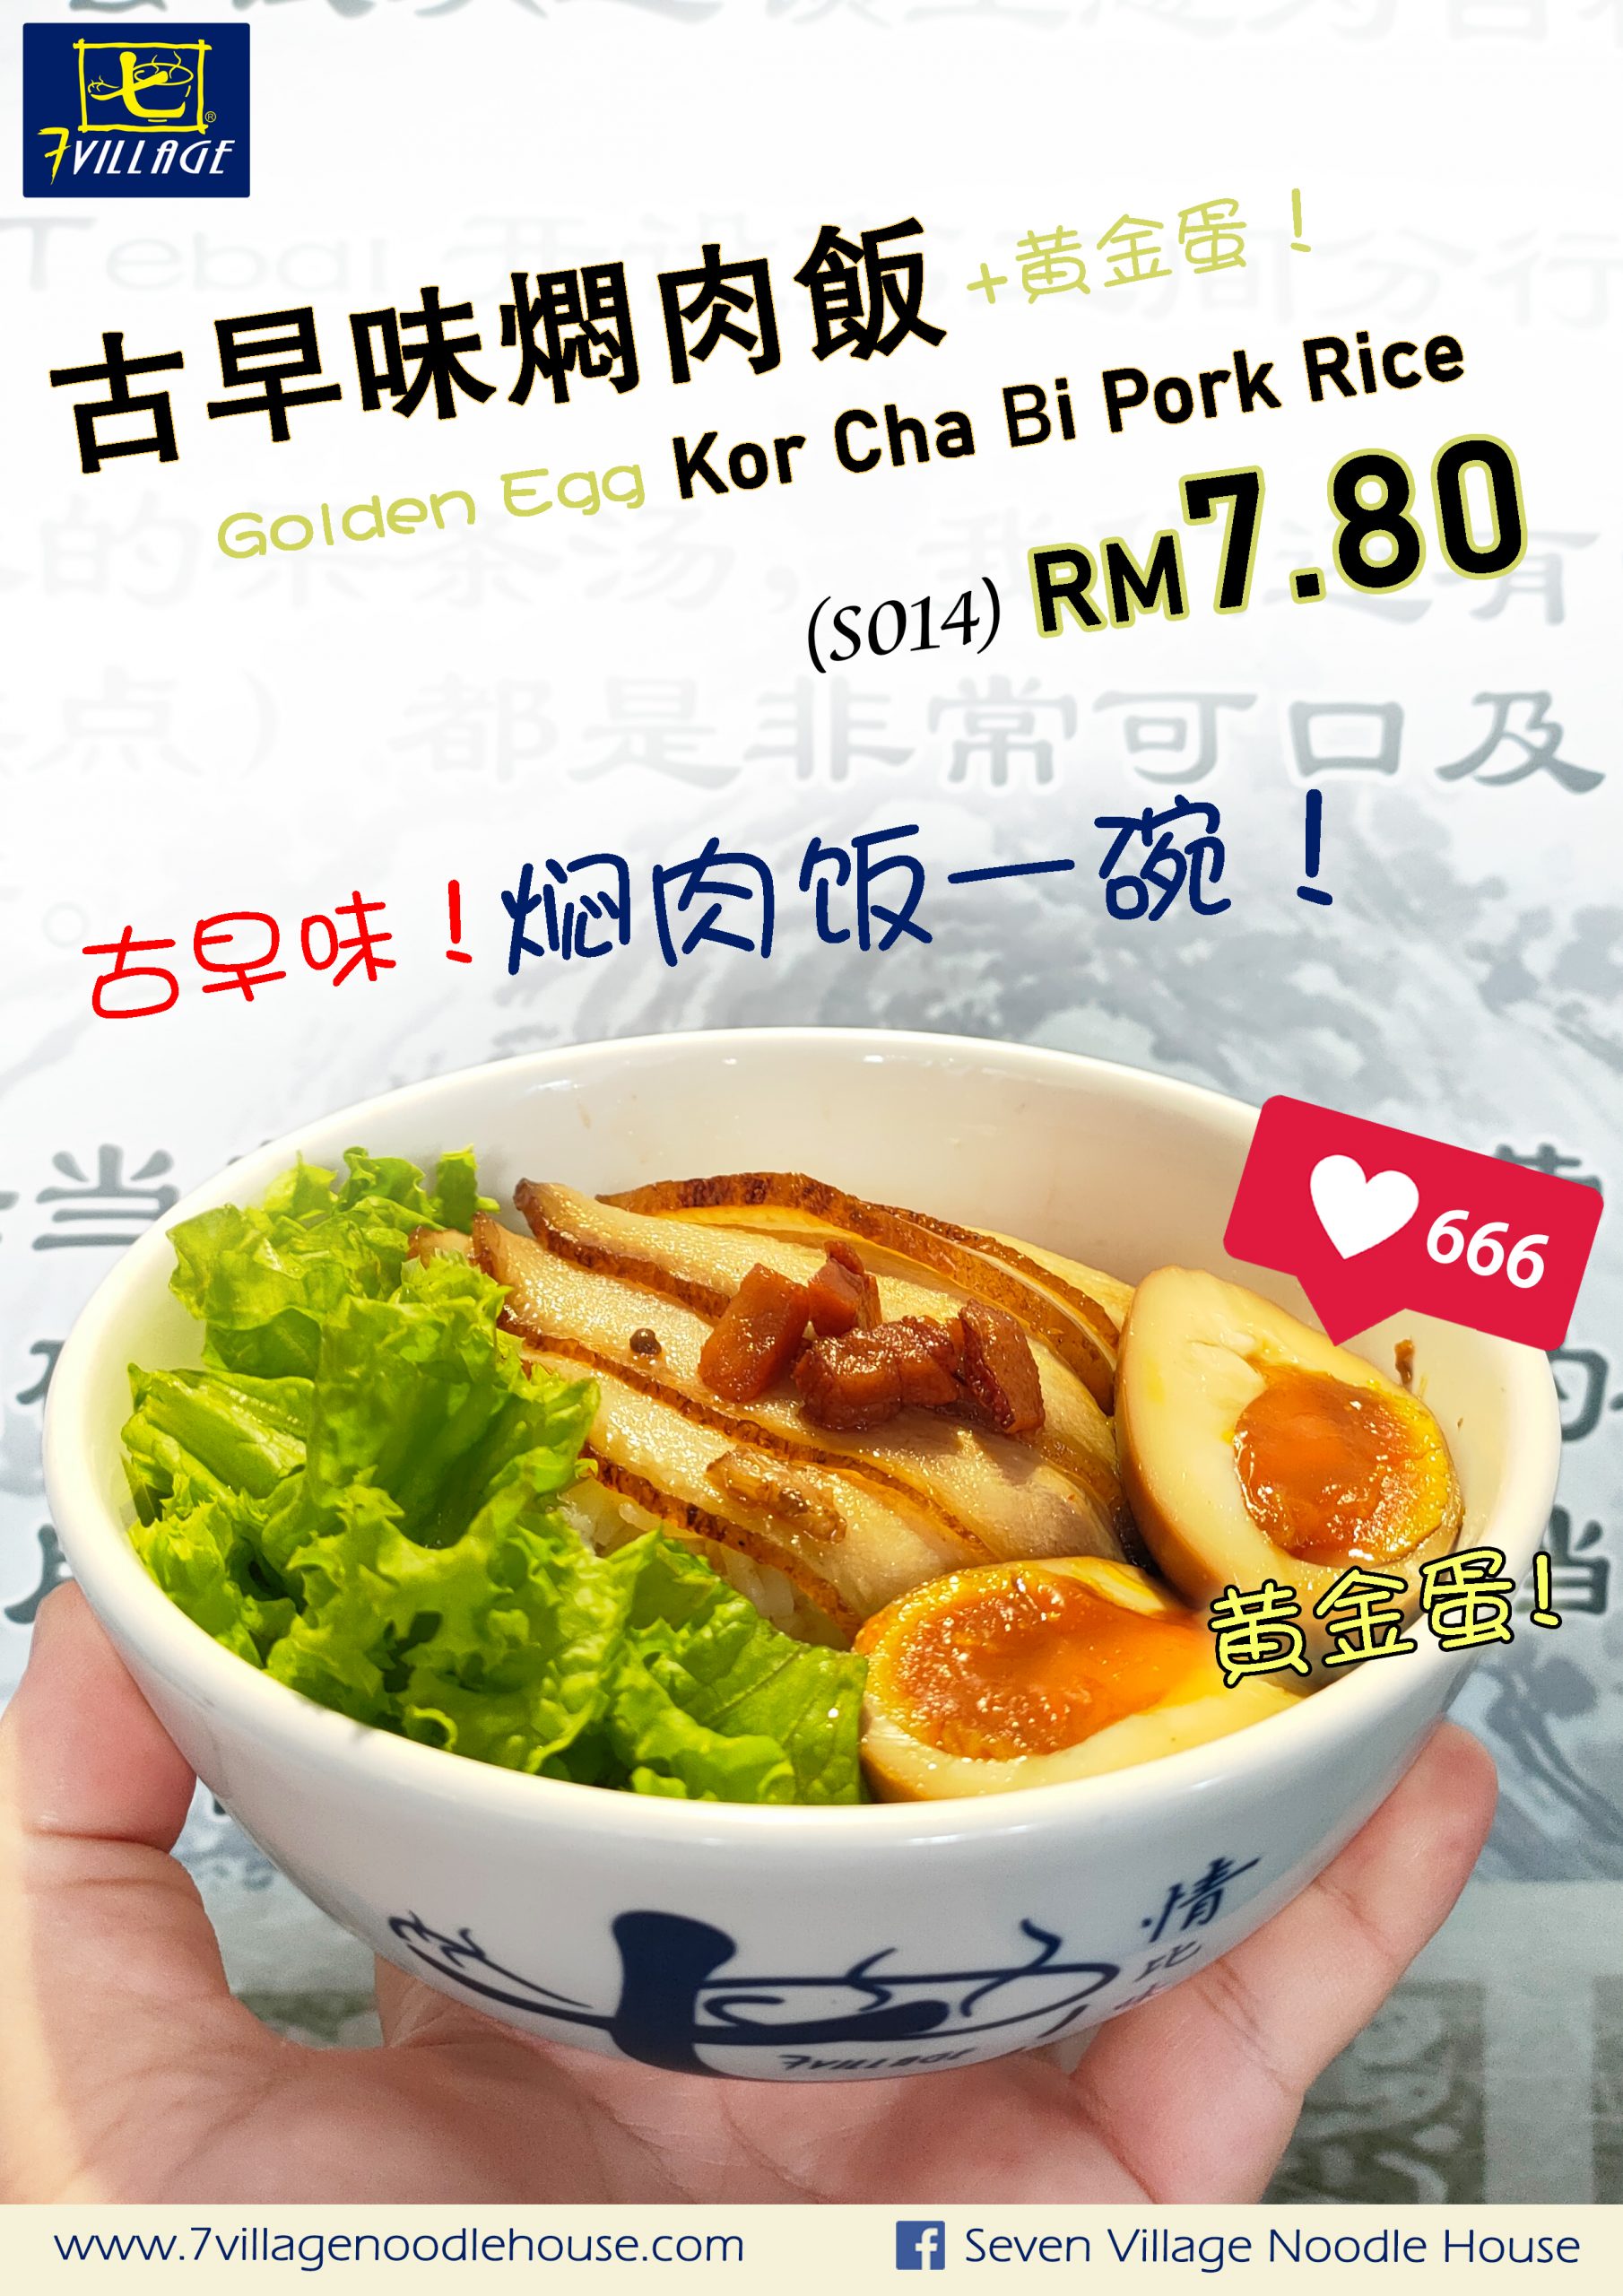 Kor Cha Bi Pork Rice_V6